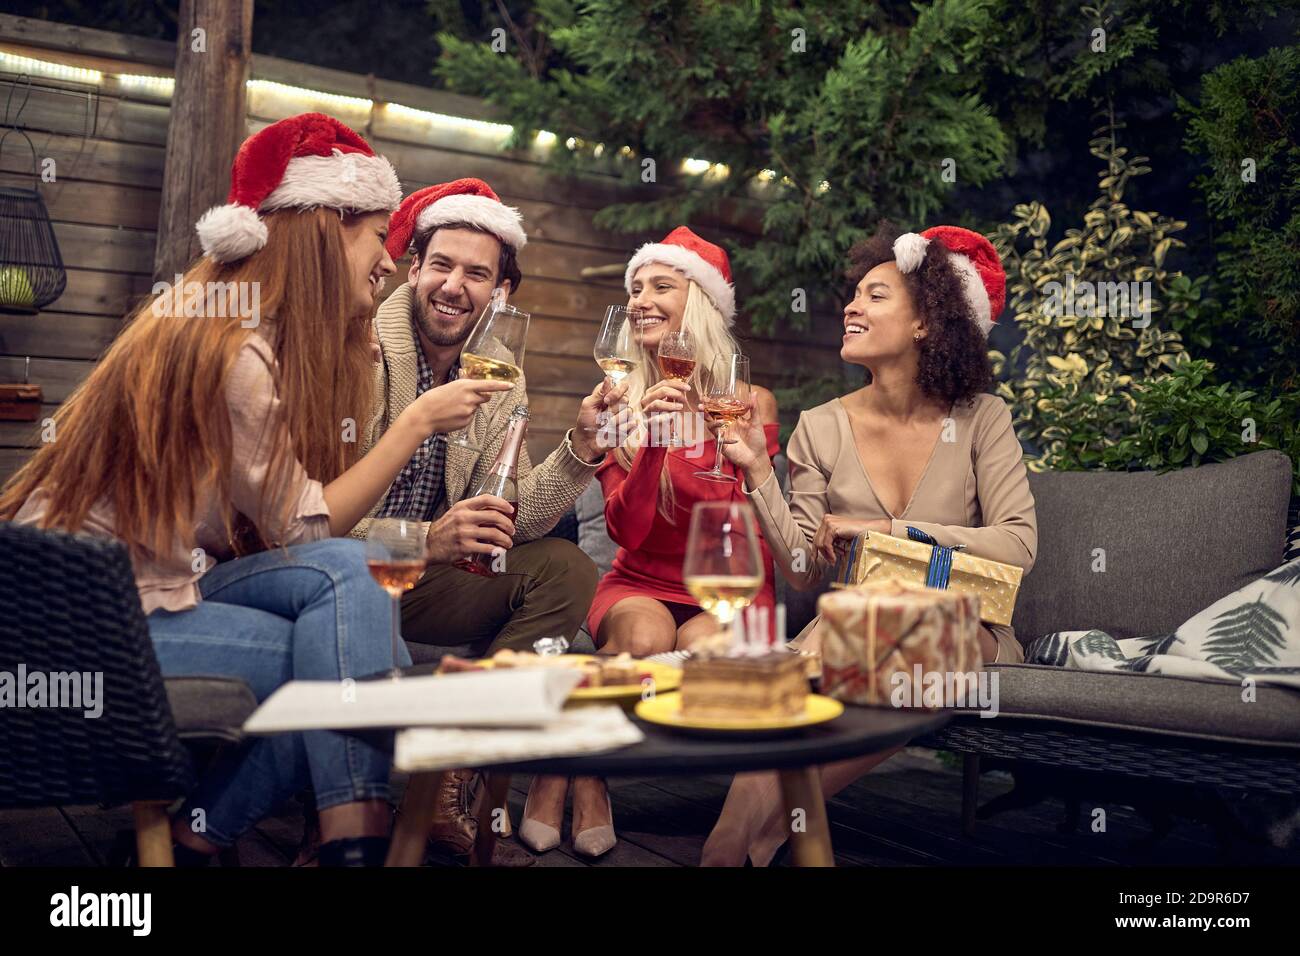 gruppo di amici che brindano con bicchieri da vino, festeggiano il nuovo anno, indossando cappelli santa clausola, seduti all'aperto nel cortile Foto Stock